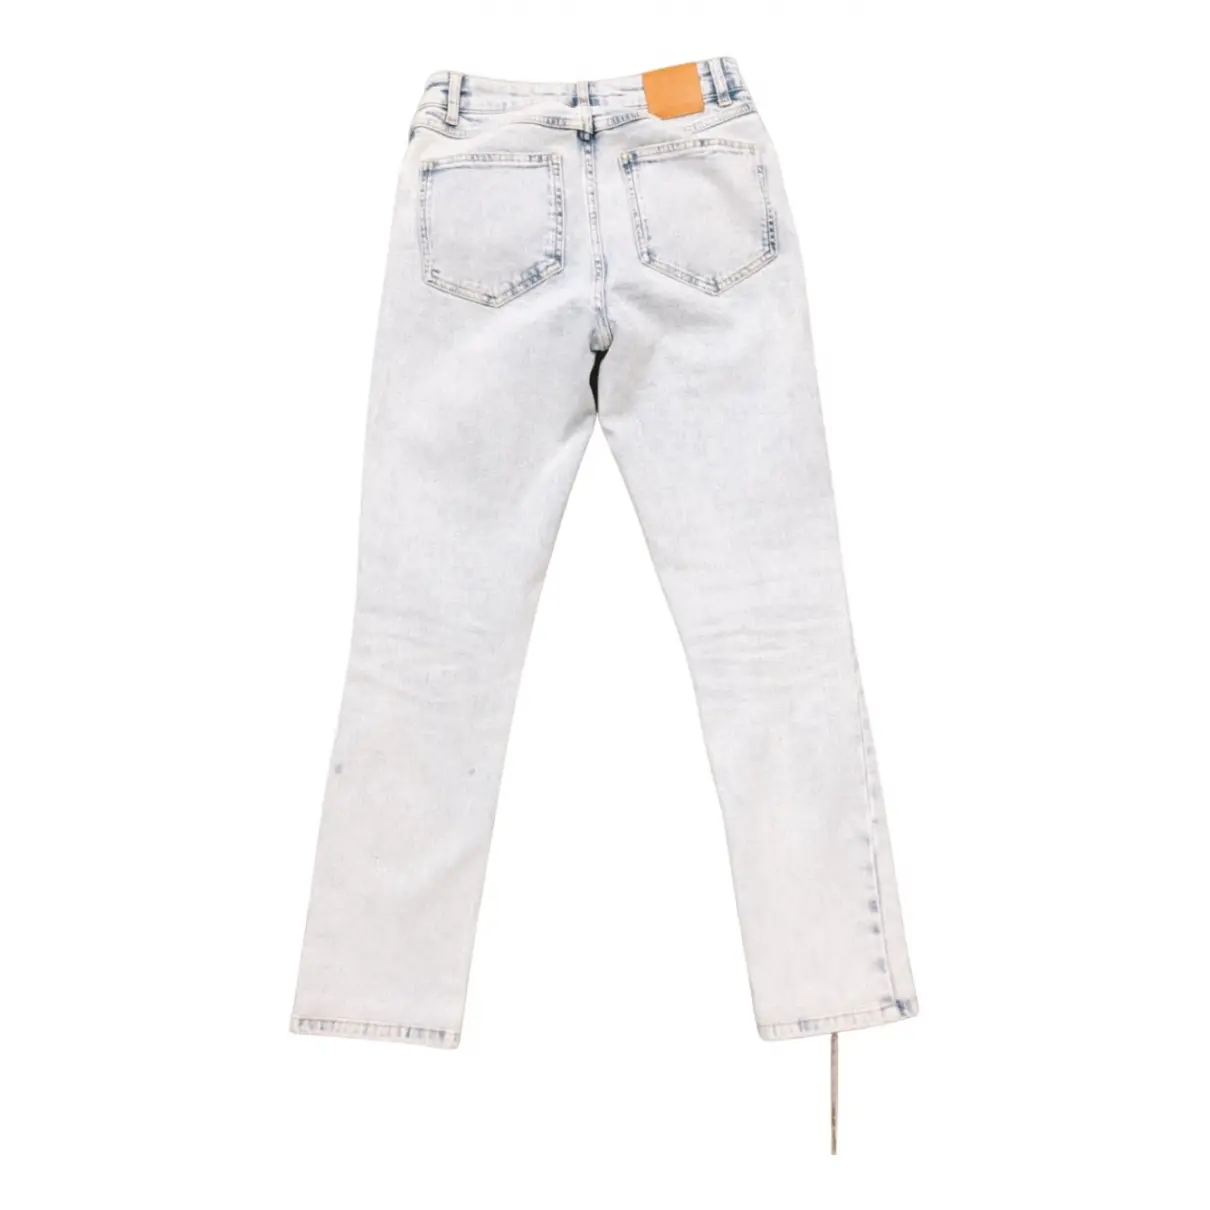 Buy Anine Bing Spring Summer 2019 slim jeans online